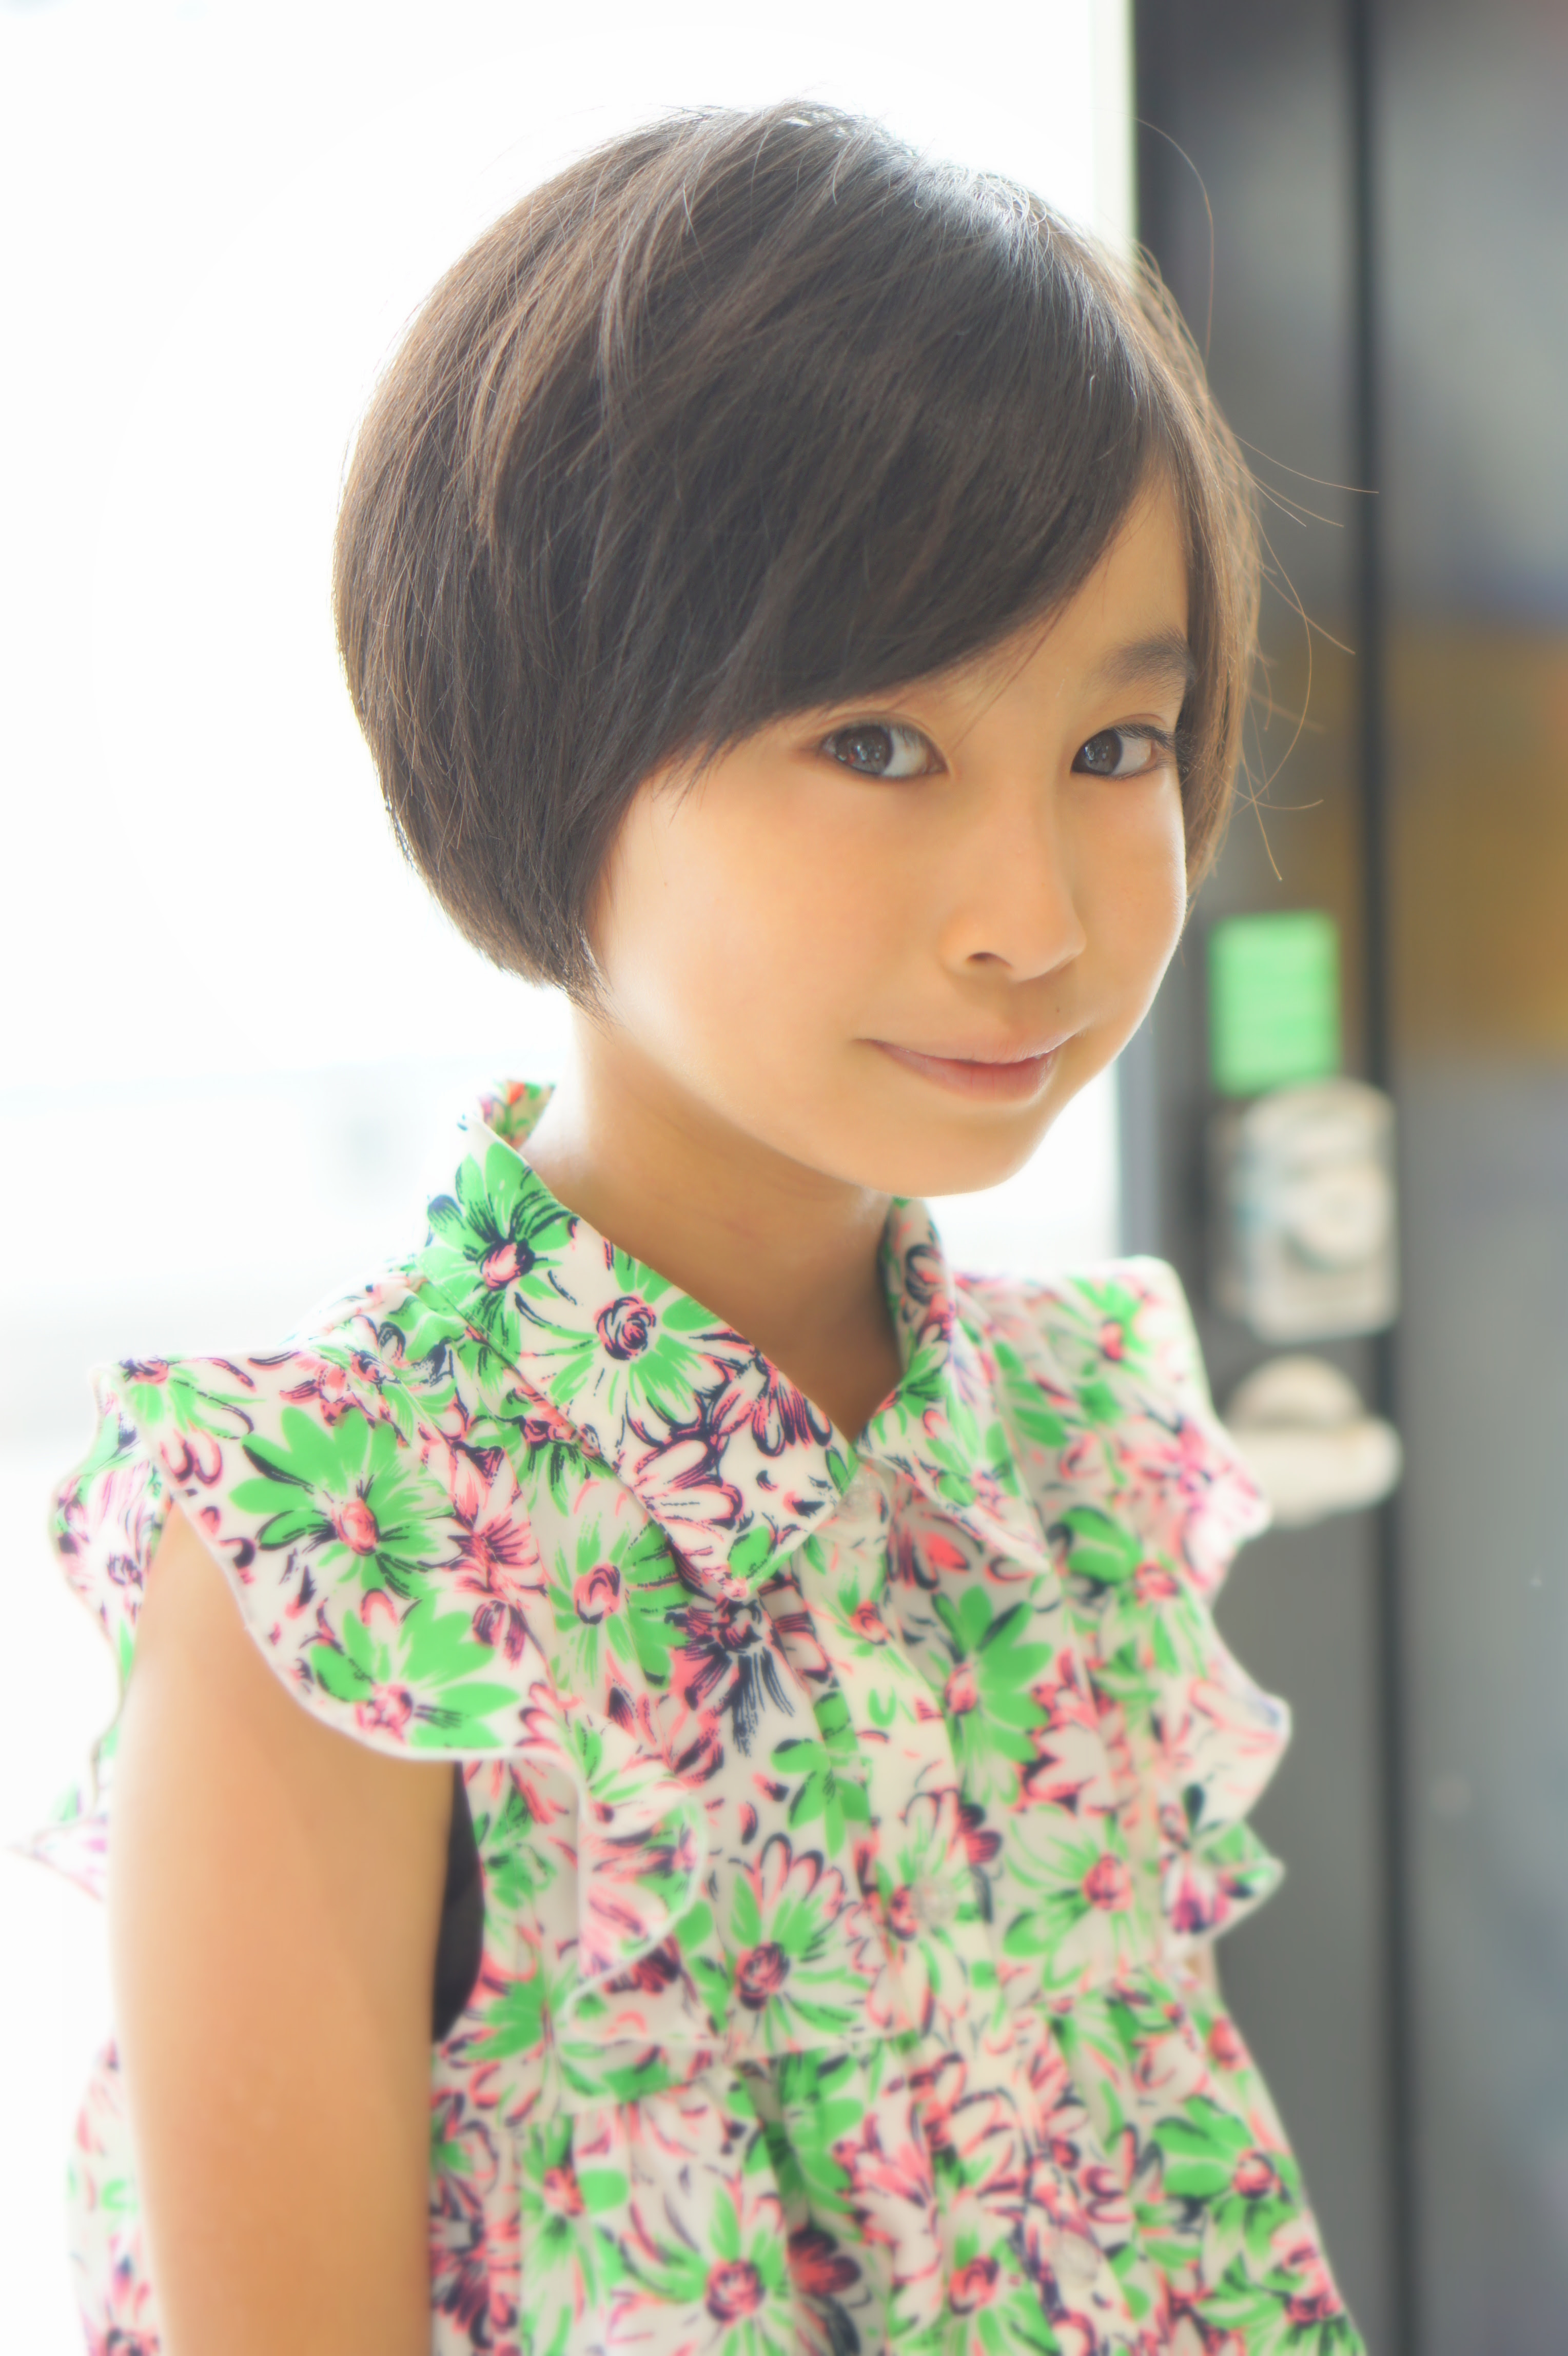 心に強く訴える 小学生 女の子 ショート ヘア 新しい壁紙ヘアファッションジャパン